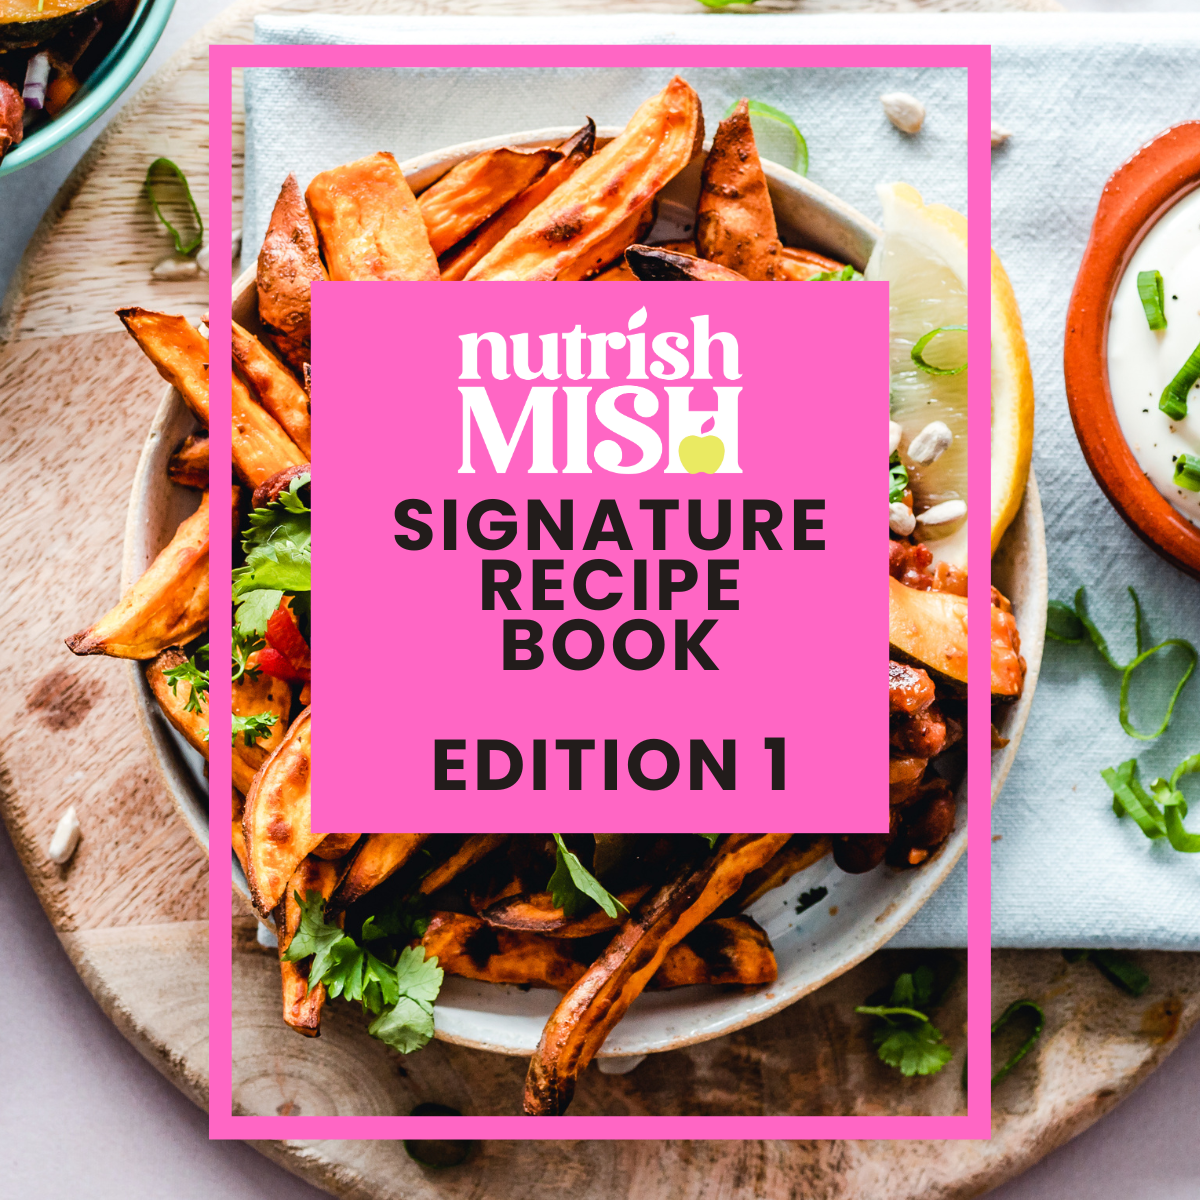 Nutrish Mish Signature Recipes Edition 1